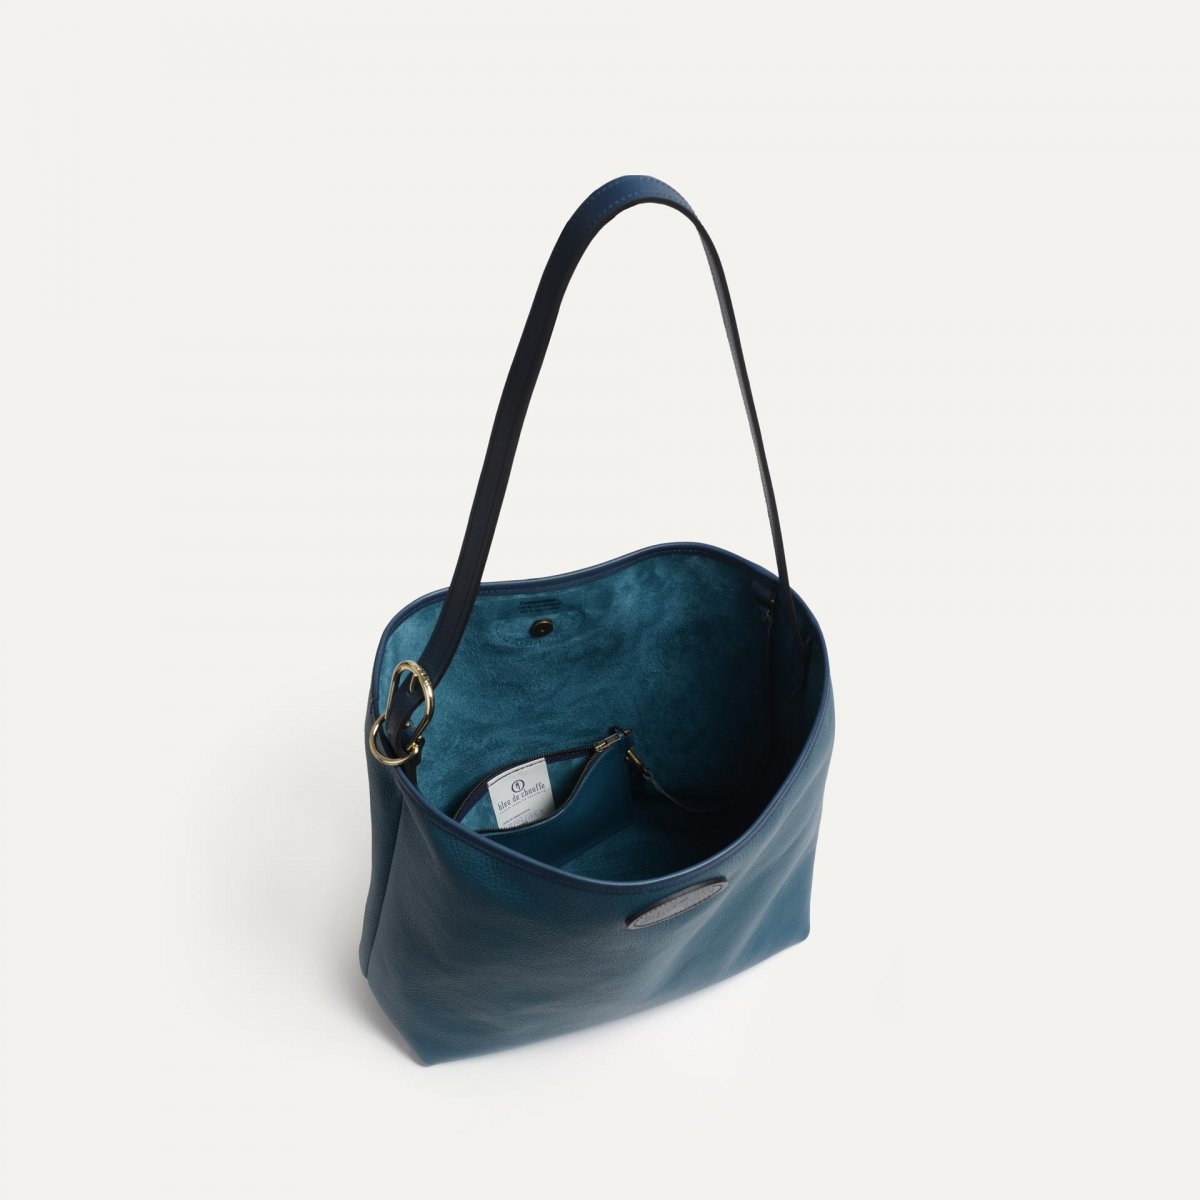 Bella besace bag - Corsair blue (image n°4)